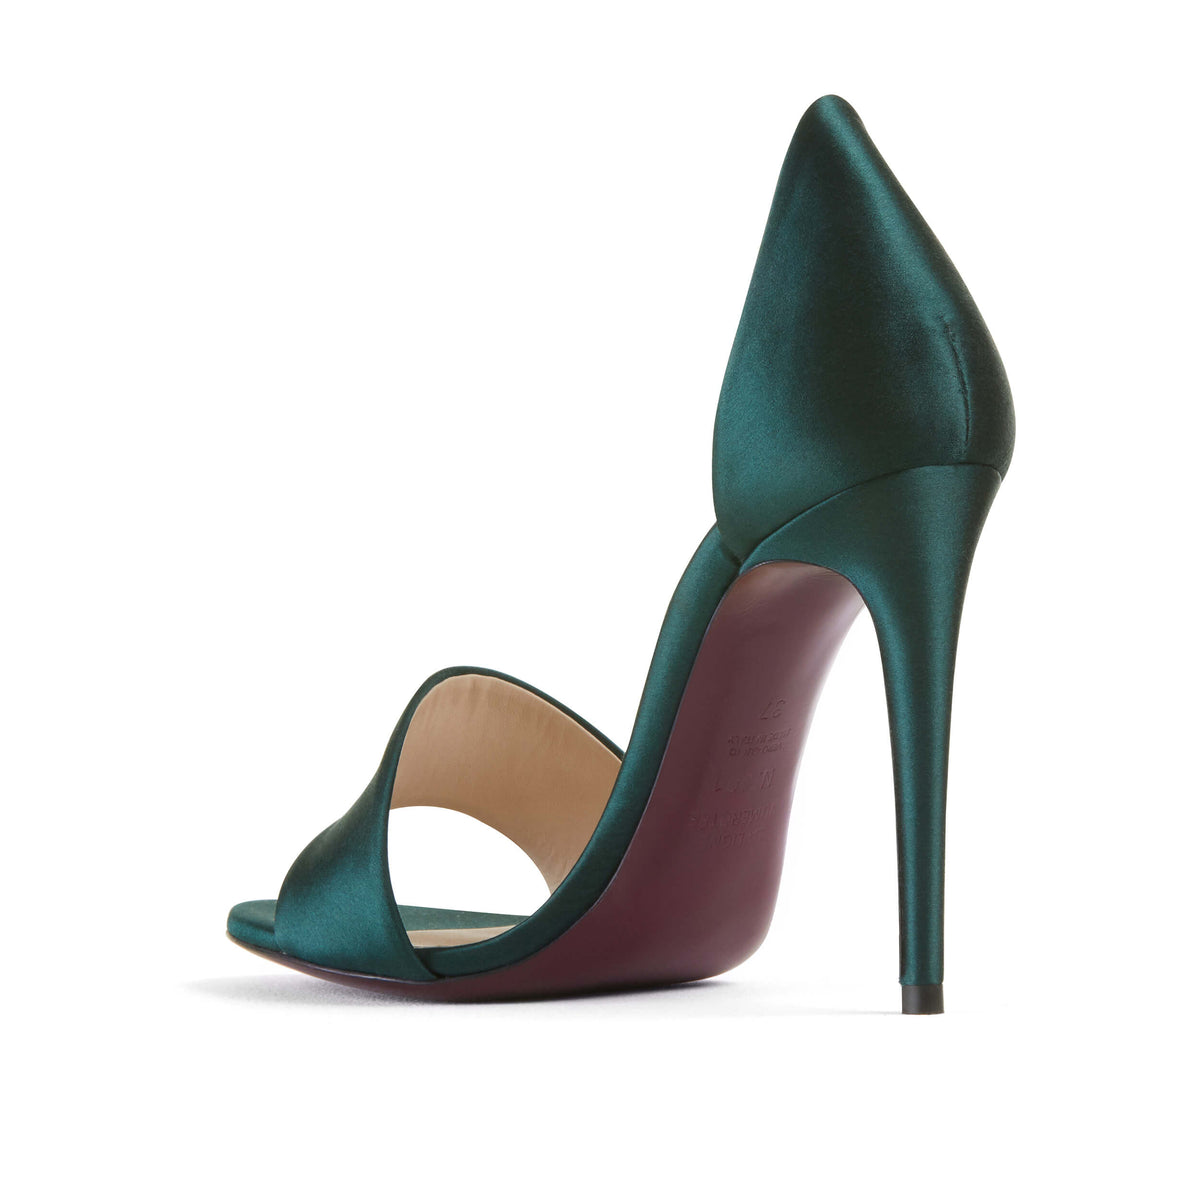 Sandale luxe en satin et talon de 10.5 cm. Colori vert émeraude. Edition Signature N.001 La Ligne Numérotée.